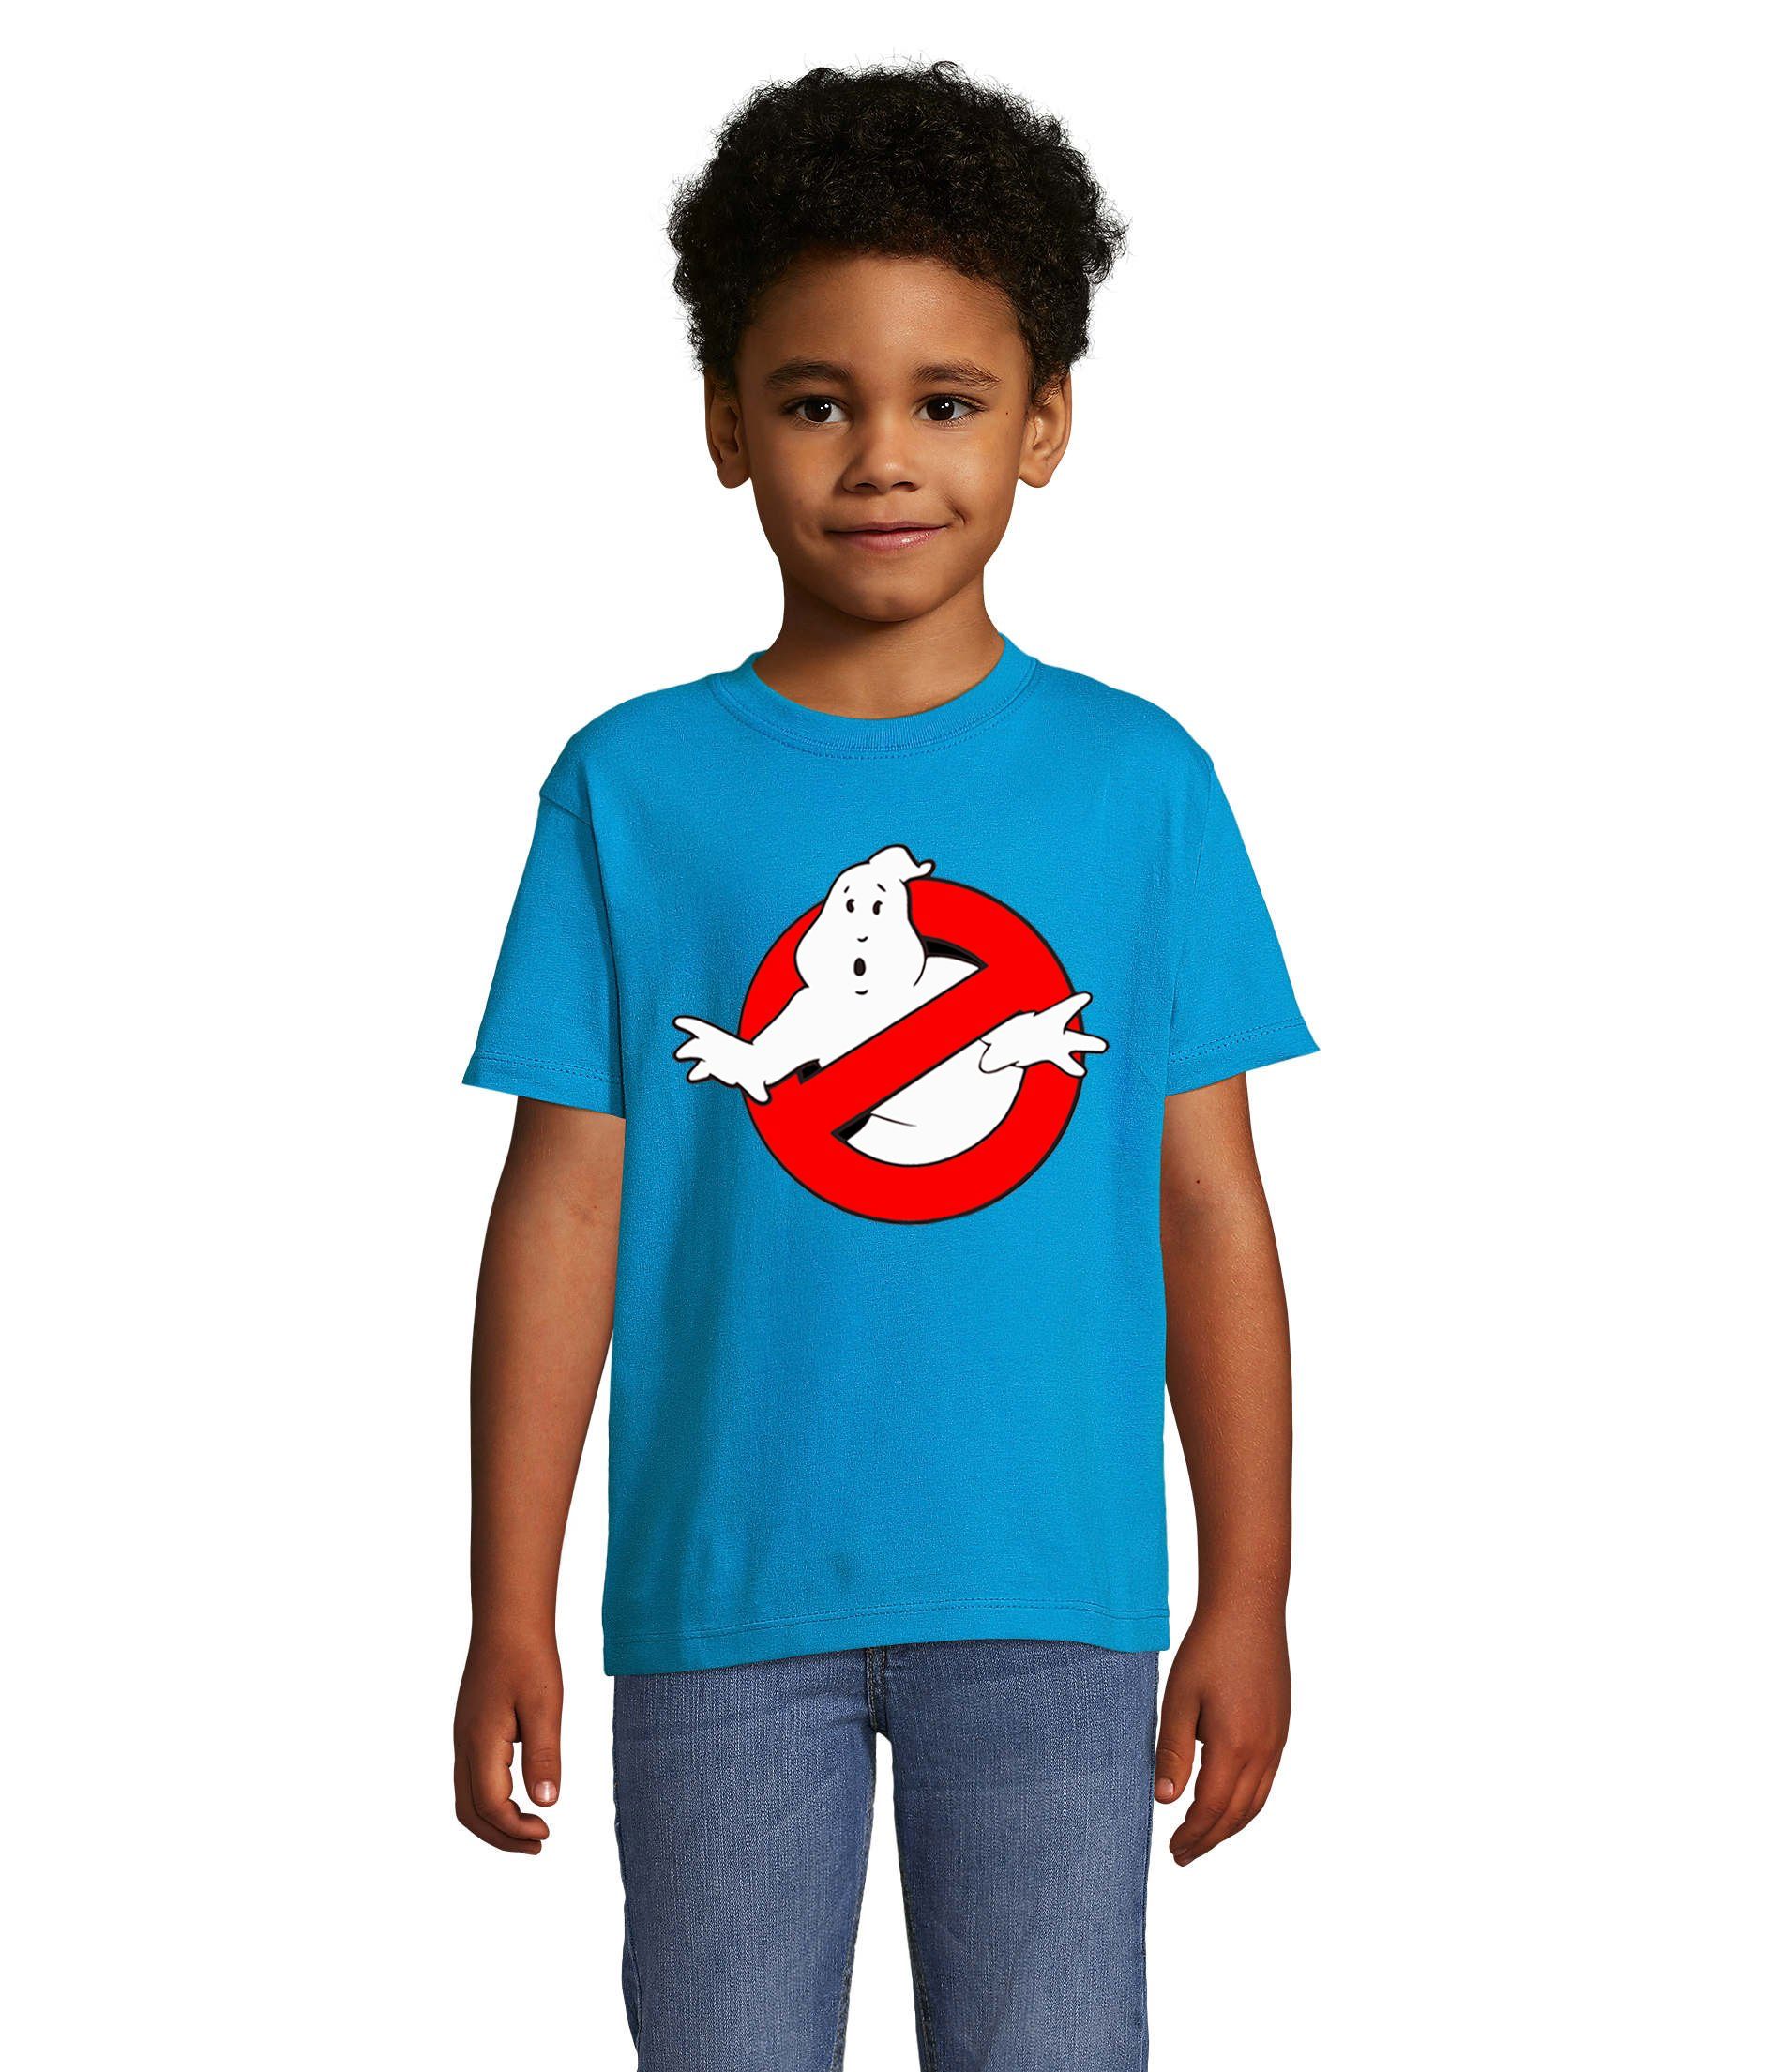 Blondie & Brownie T-Shirt Kinder Jungen & Mädchen Ghostbusters Ghost Geister Geisterjäger in vielen Farben Blau